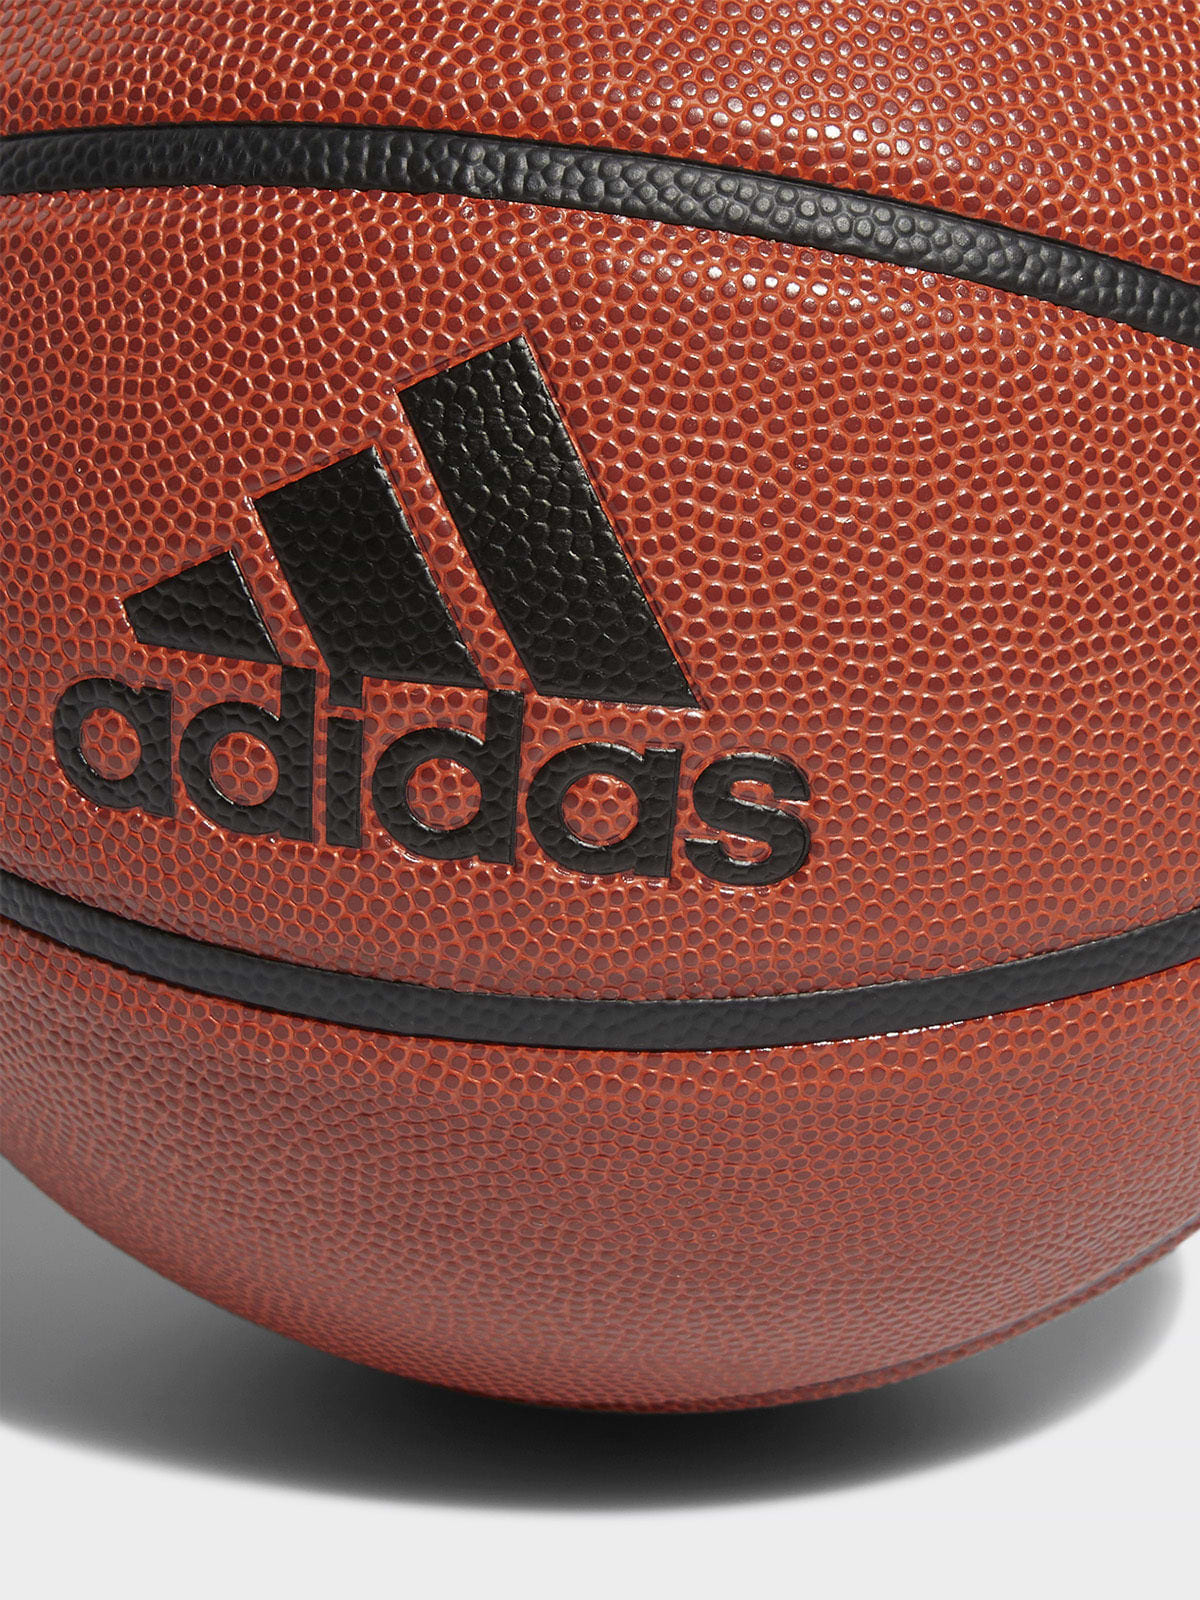 כדור כדורסל דמוי עור- adidas performance|אדידס פרפורמנס